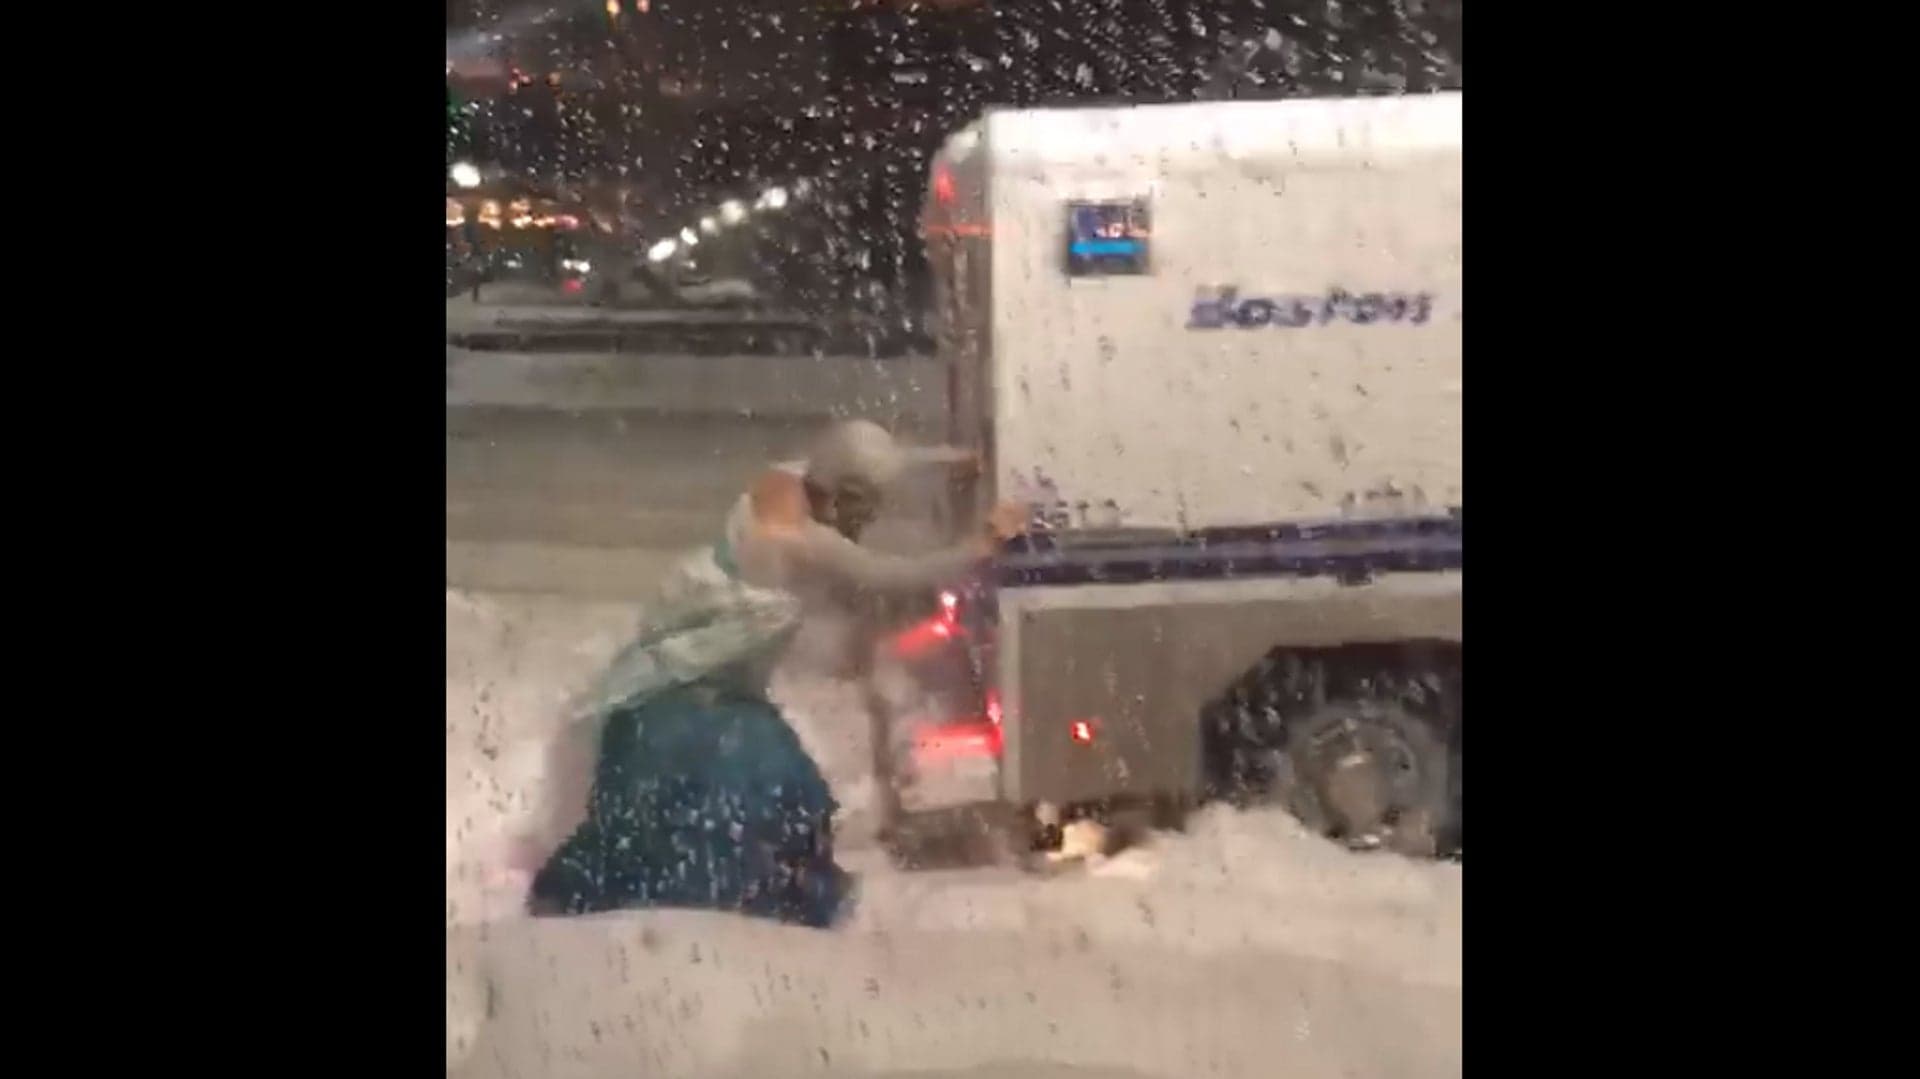 Watch Man Dressed as Elsa From Frozen Help Boston Police Van Get Un-Stuck in Nor’easter